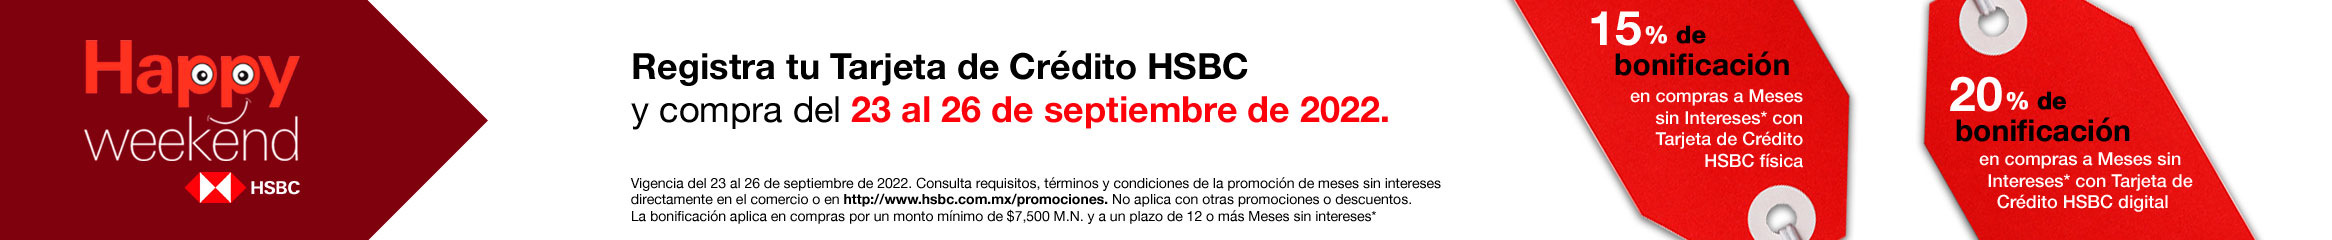 HSBC: Happy Weekend